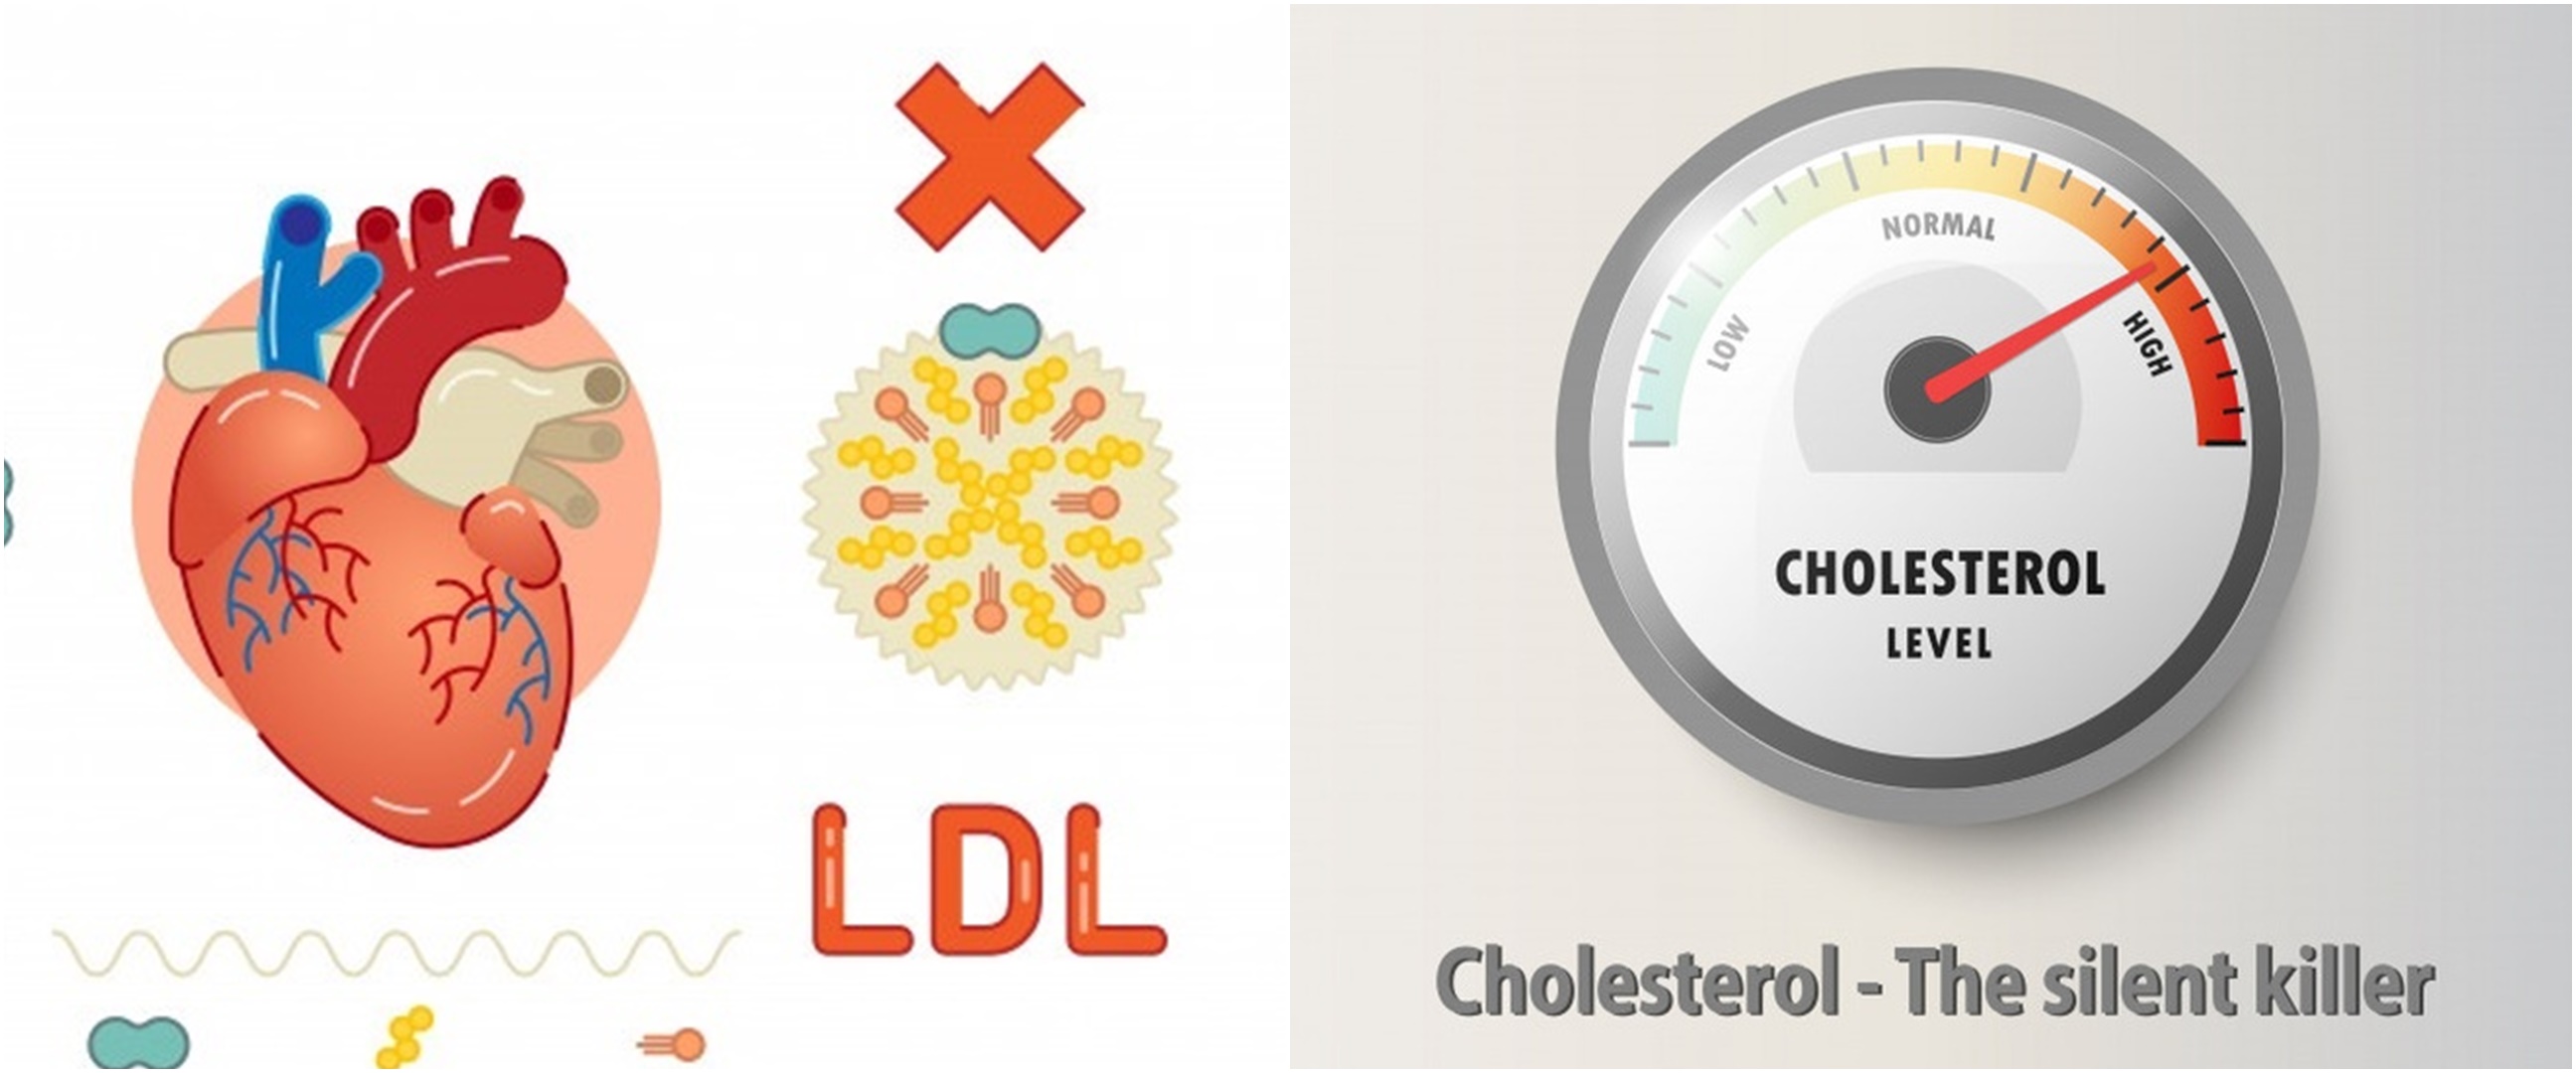 10 Cara menurunkan kolesterol tinggi secara alami, tanpa efek samping